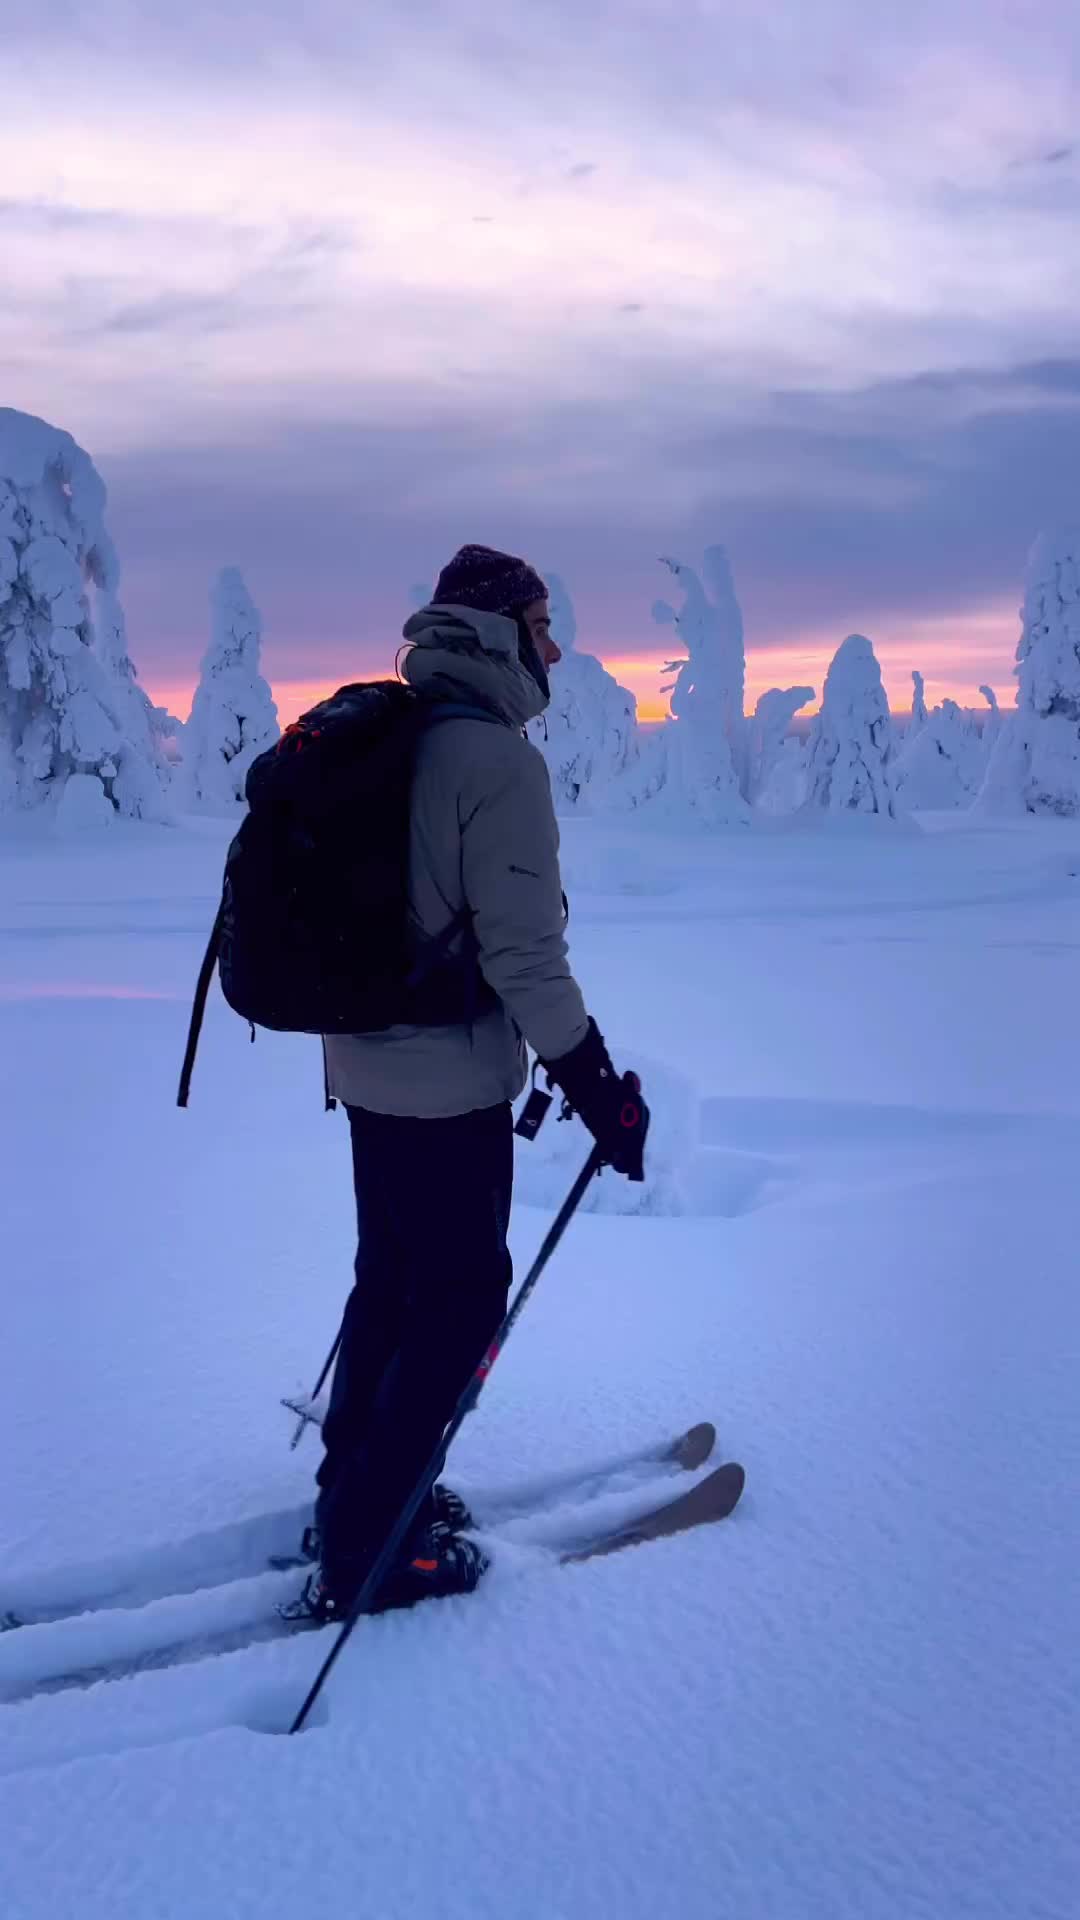 A Day in Lapland: Winter Wonderland Adventure